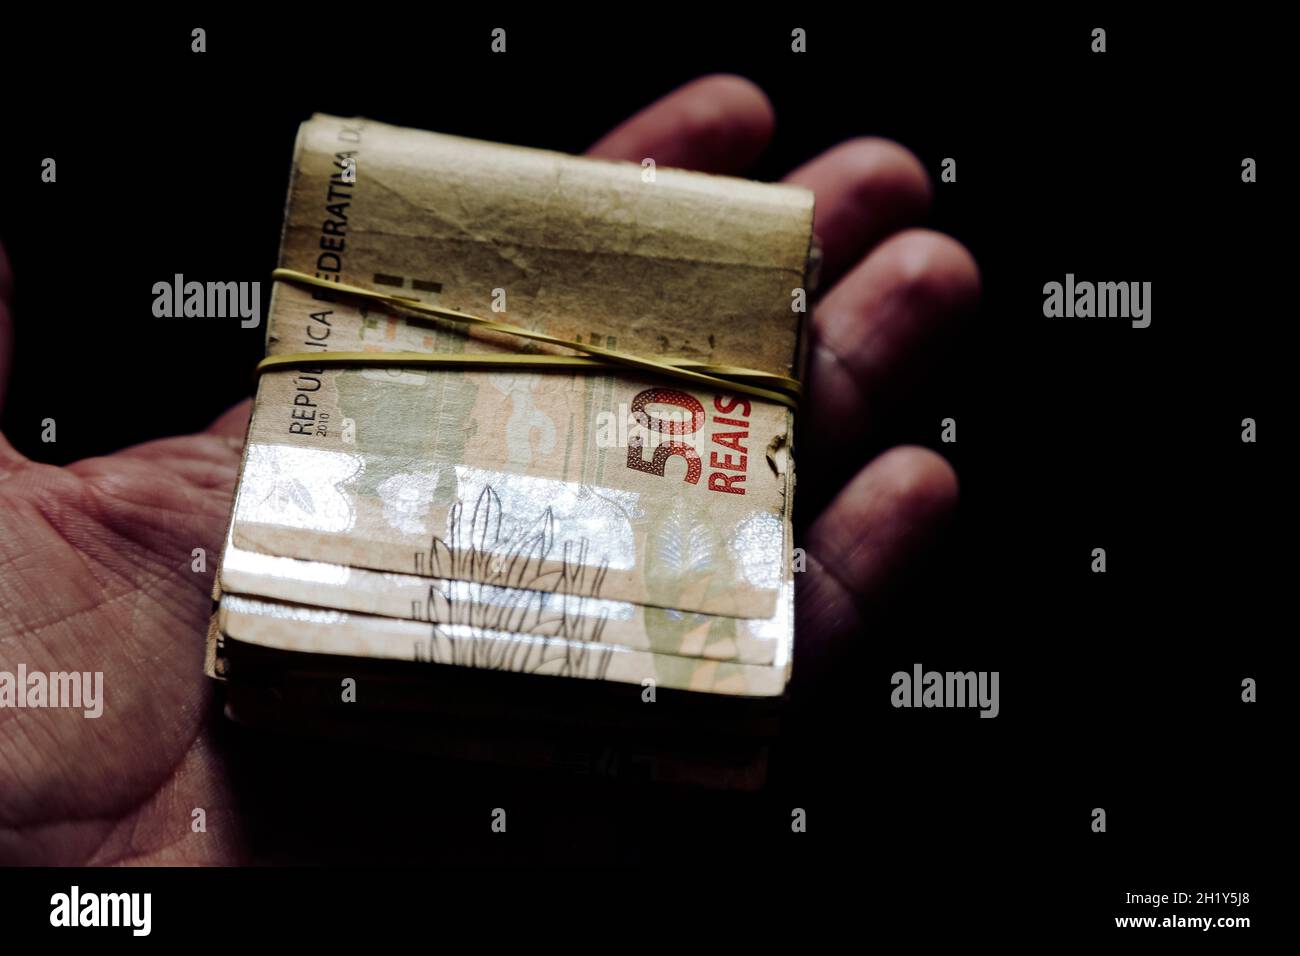 Brésil argent empilé et groupé - plusieurs billets réels brésiliens en main Banque D'Images